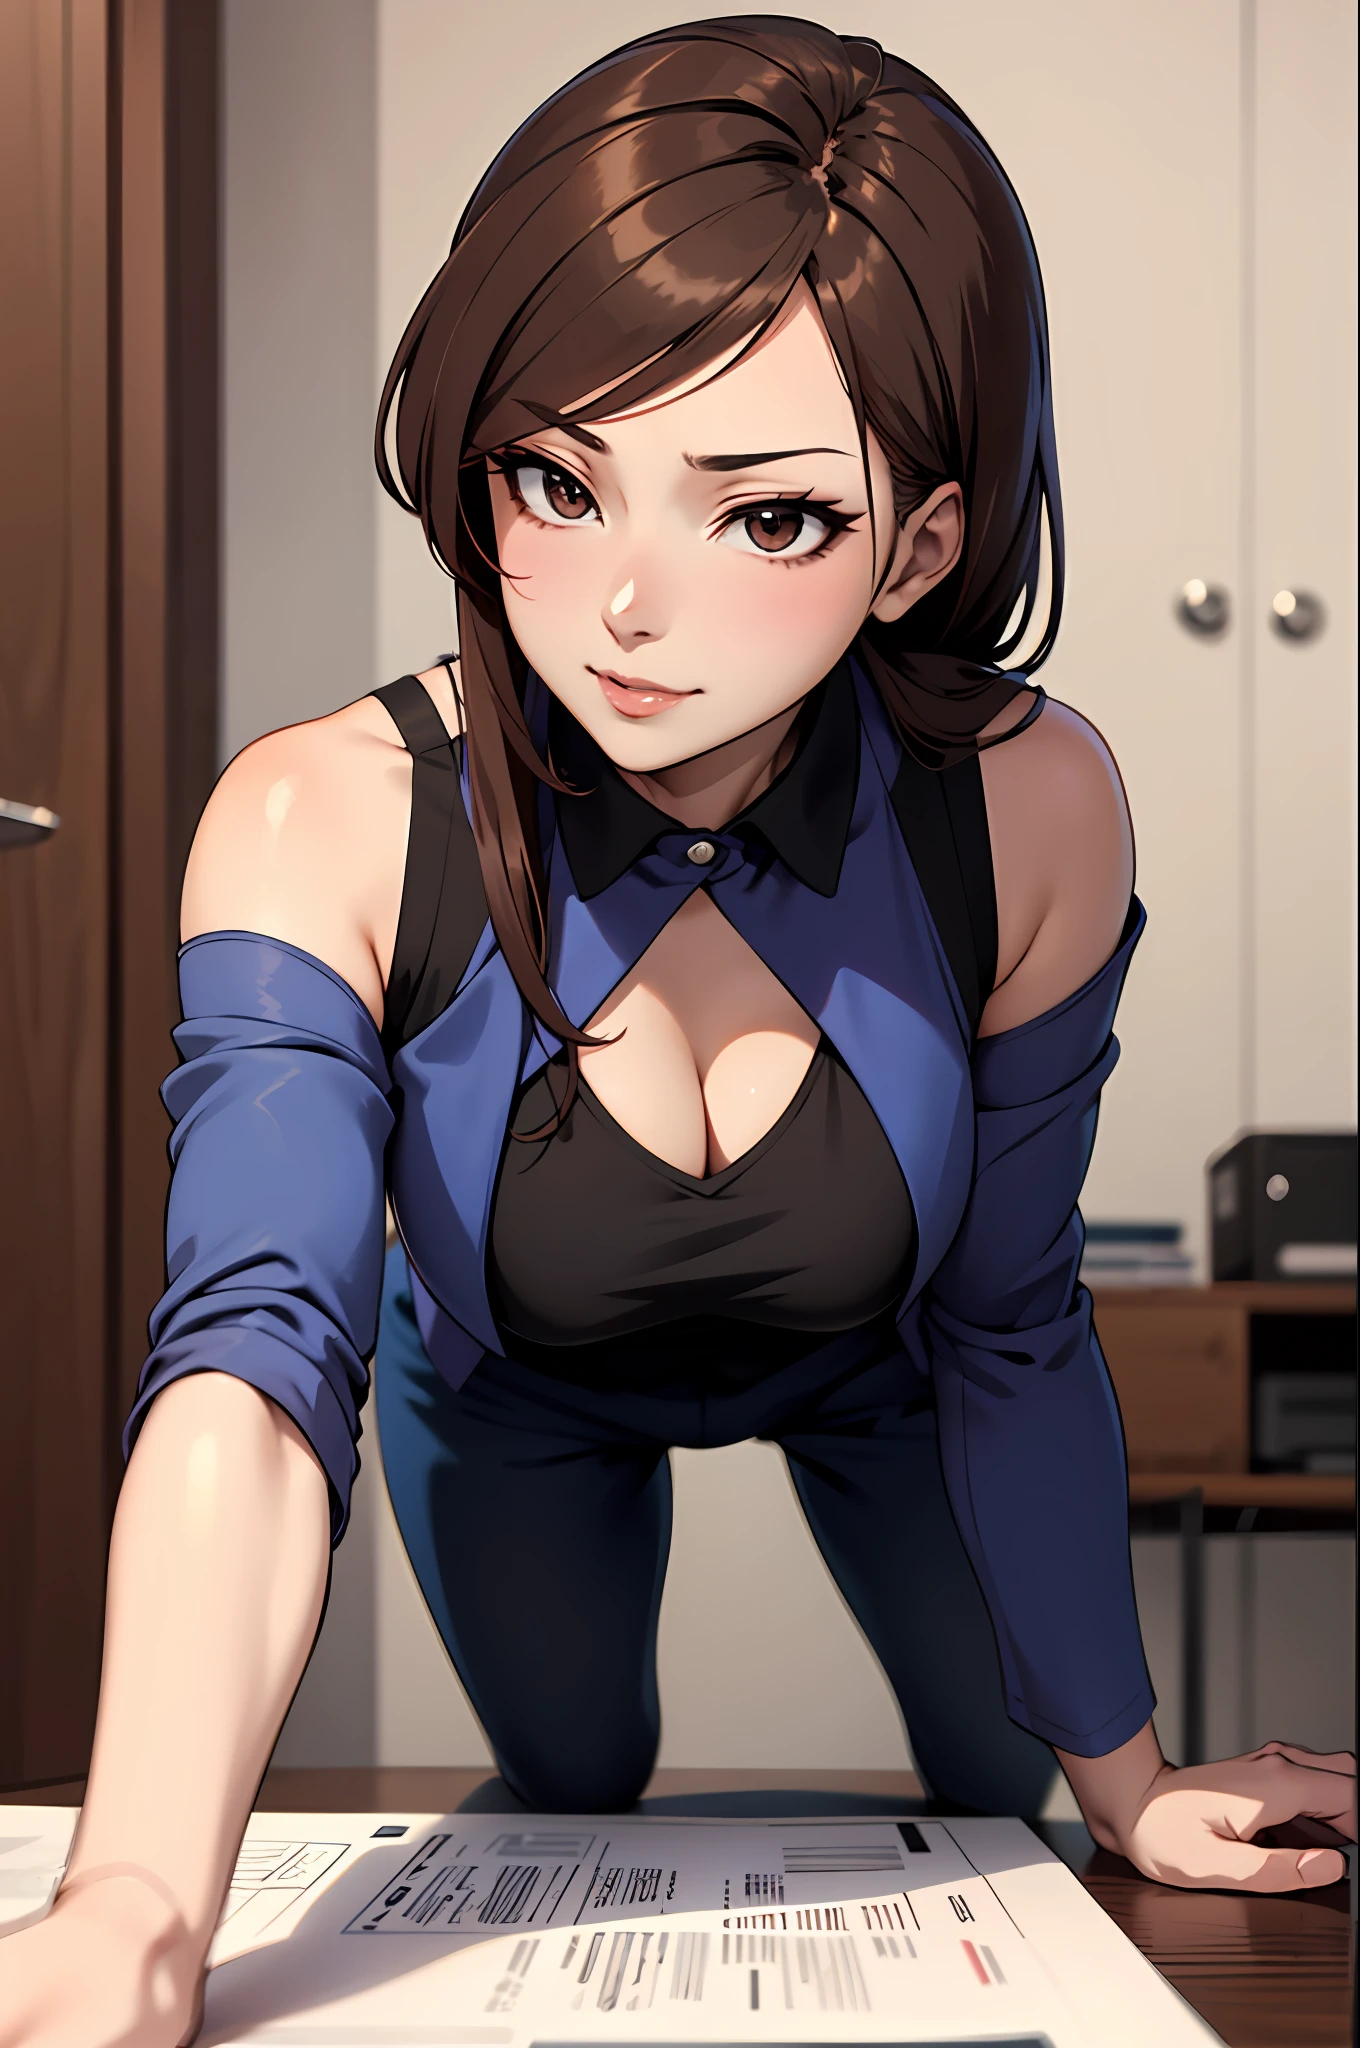 Chica anime con traje azul con top negro y cabello castaño., chica anime seductora, estilo anime ecchi, , hermosa y seductora mujer anime, flexionándose hacia adelante,Kamimei,